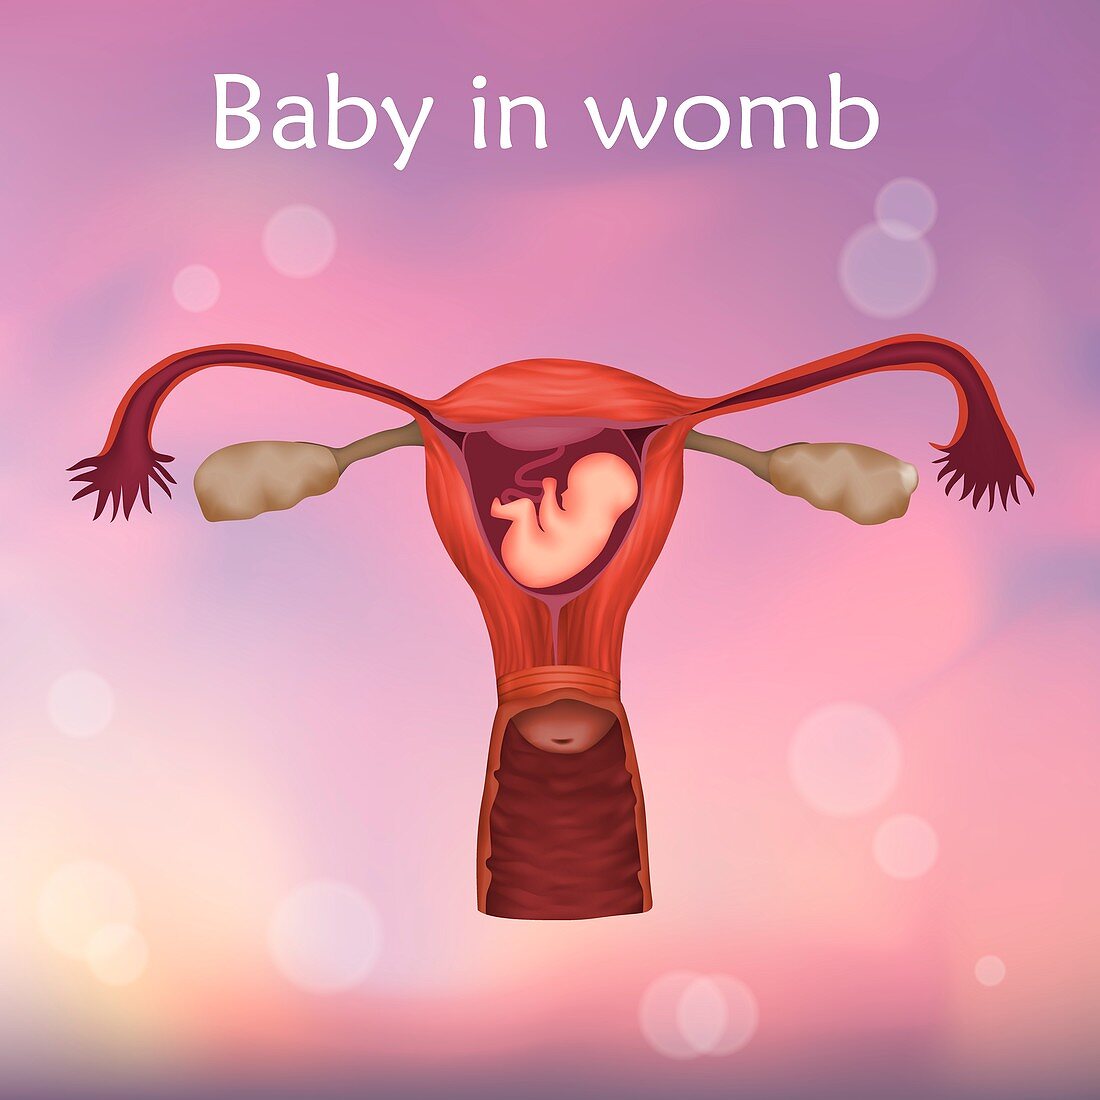 Foetus in uterus, illustration